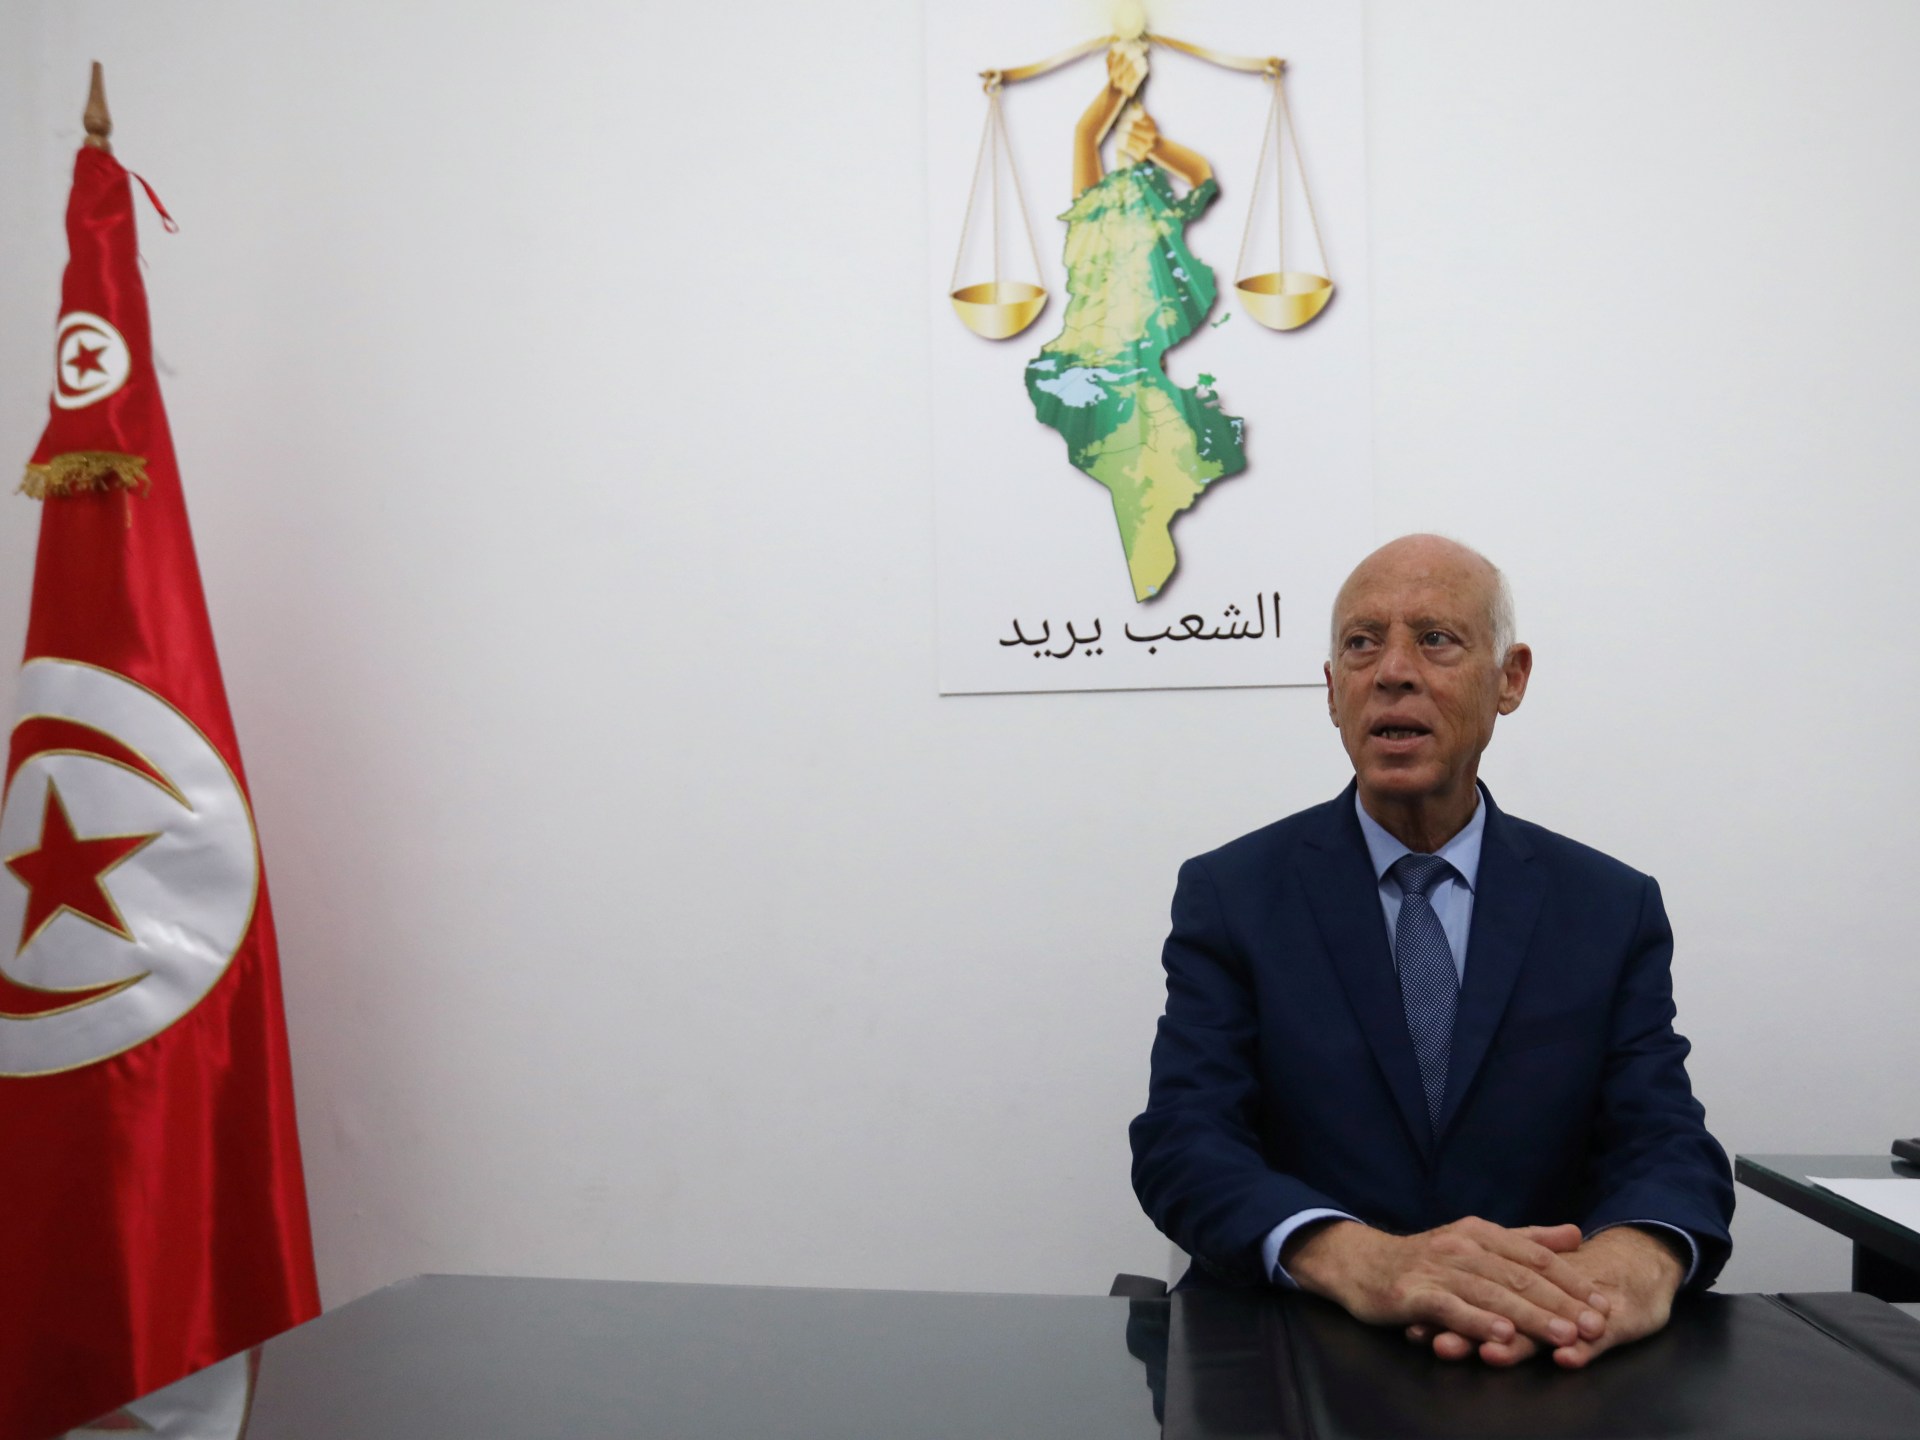 Biden mendesak penghentian bantuan AS ke Tunisia karena ‘putaran otoriter’ |  Berita Politik